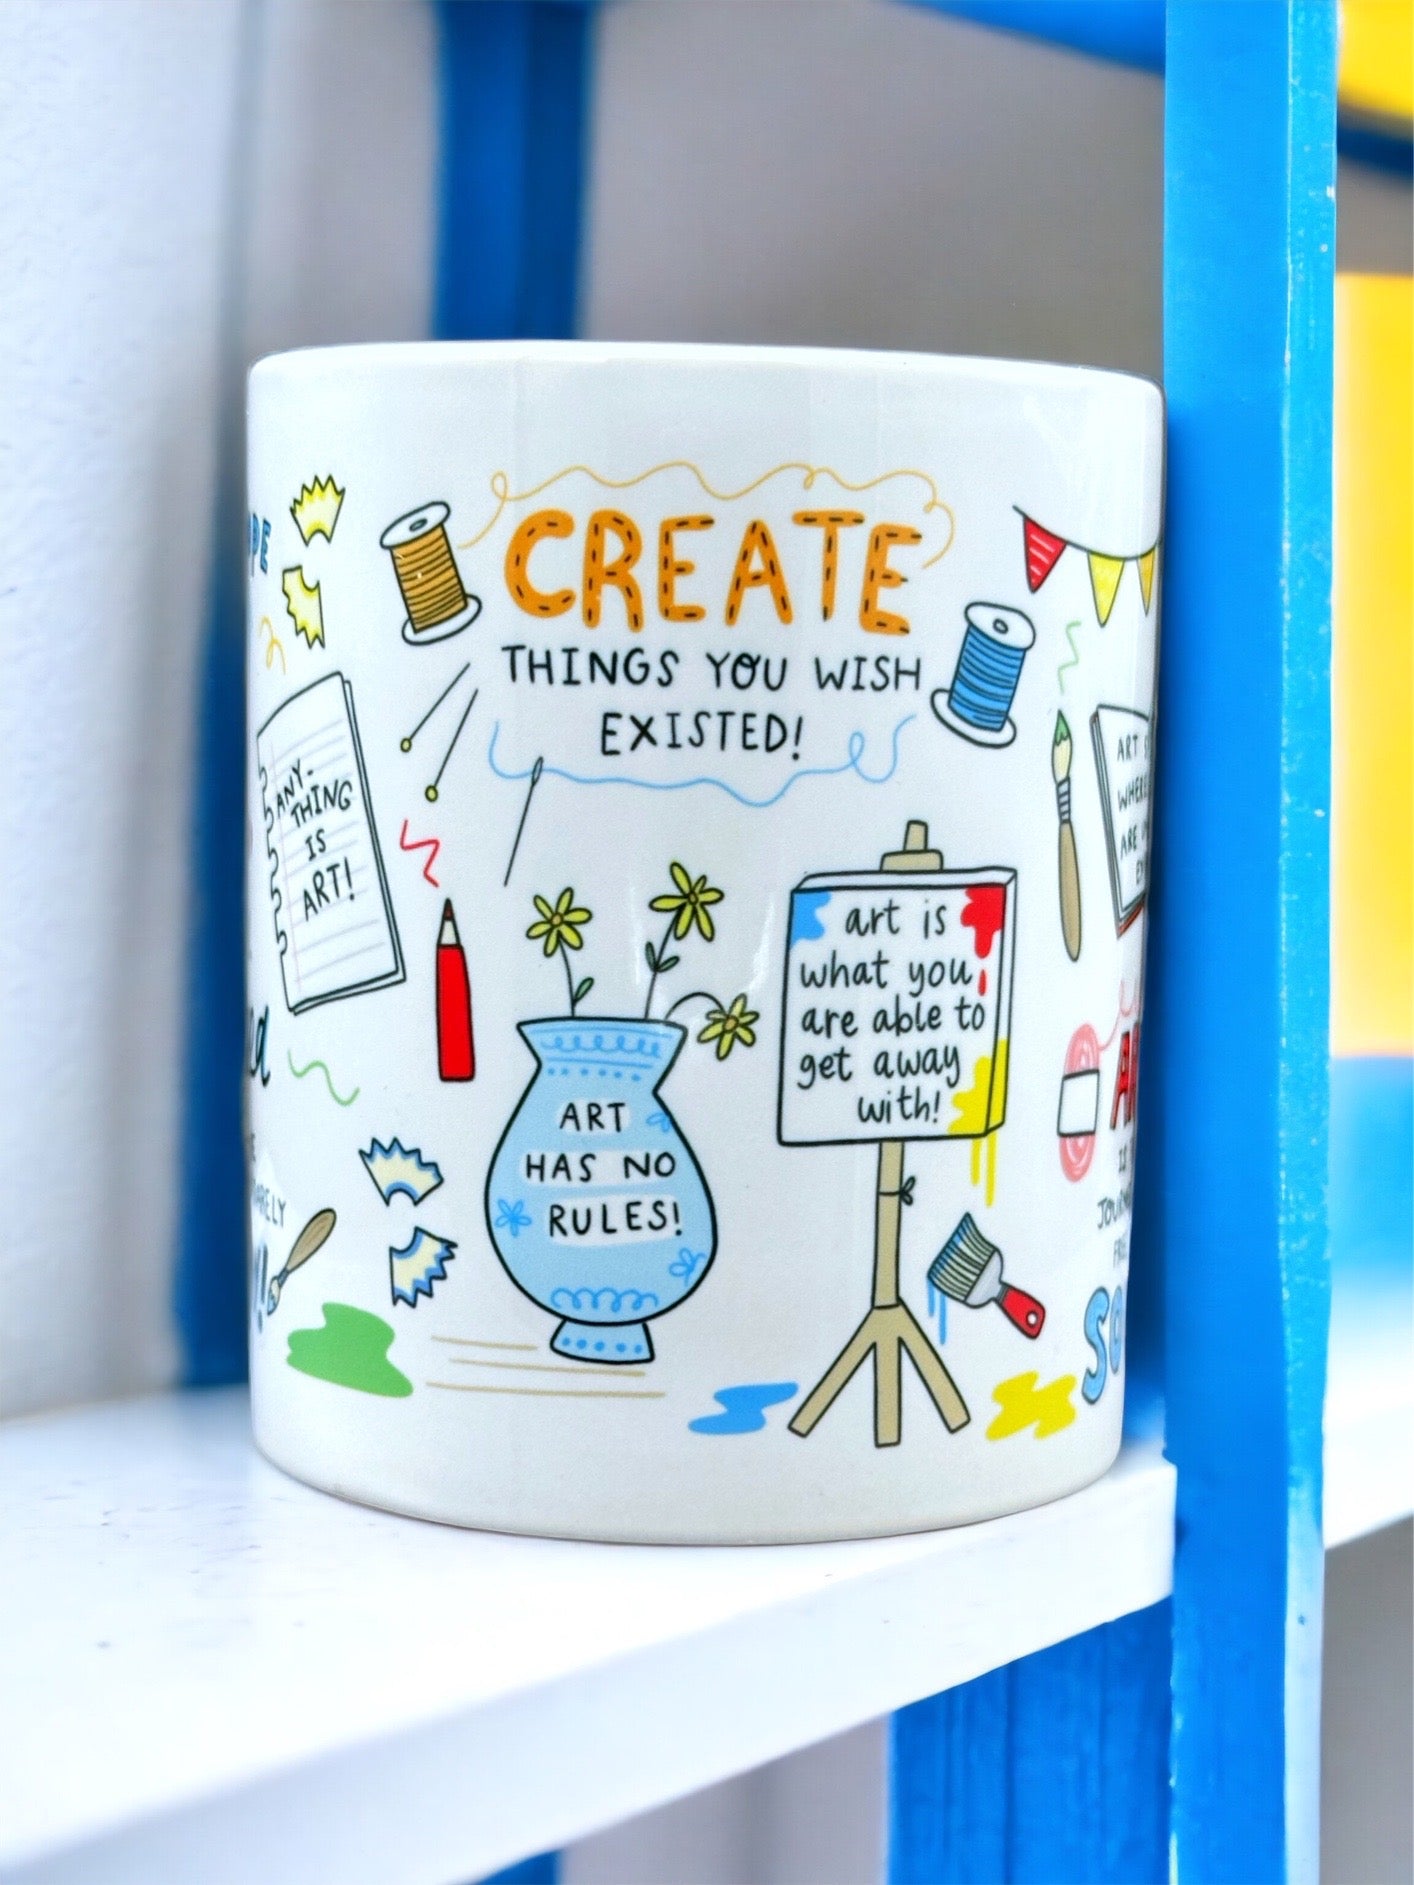 CUP OF CREATIVI-TEA